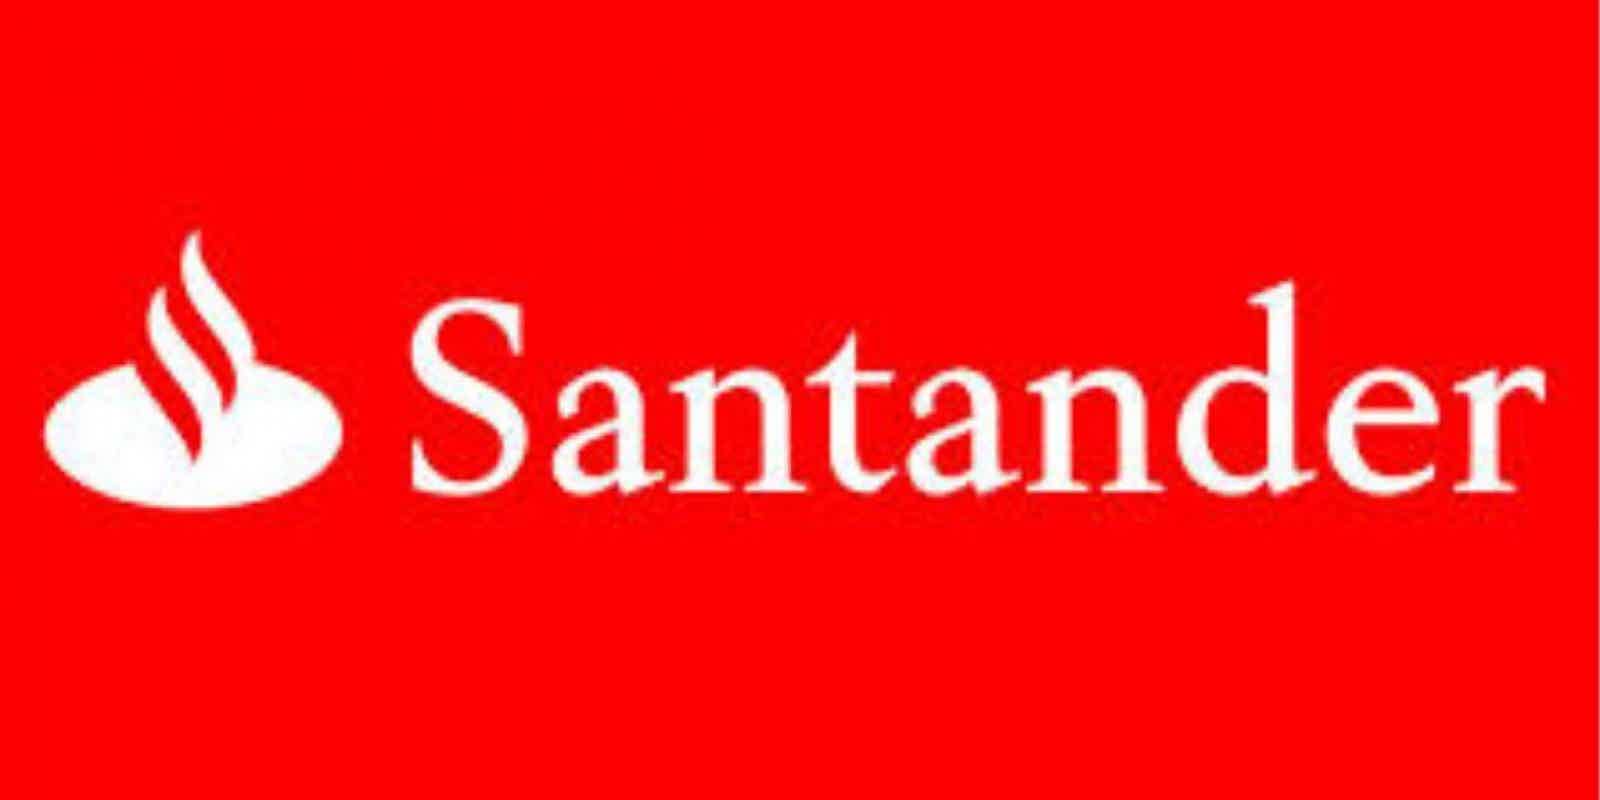 Mas, afinal, quem é o Banco Santander? Fonte: Santander.